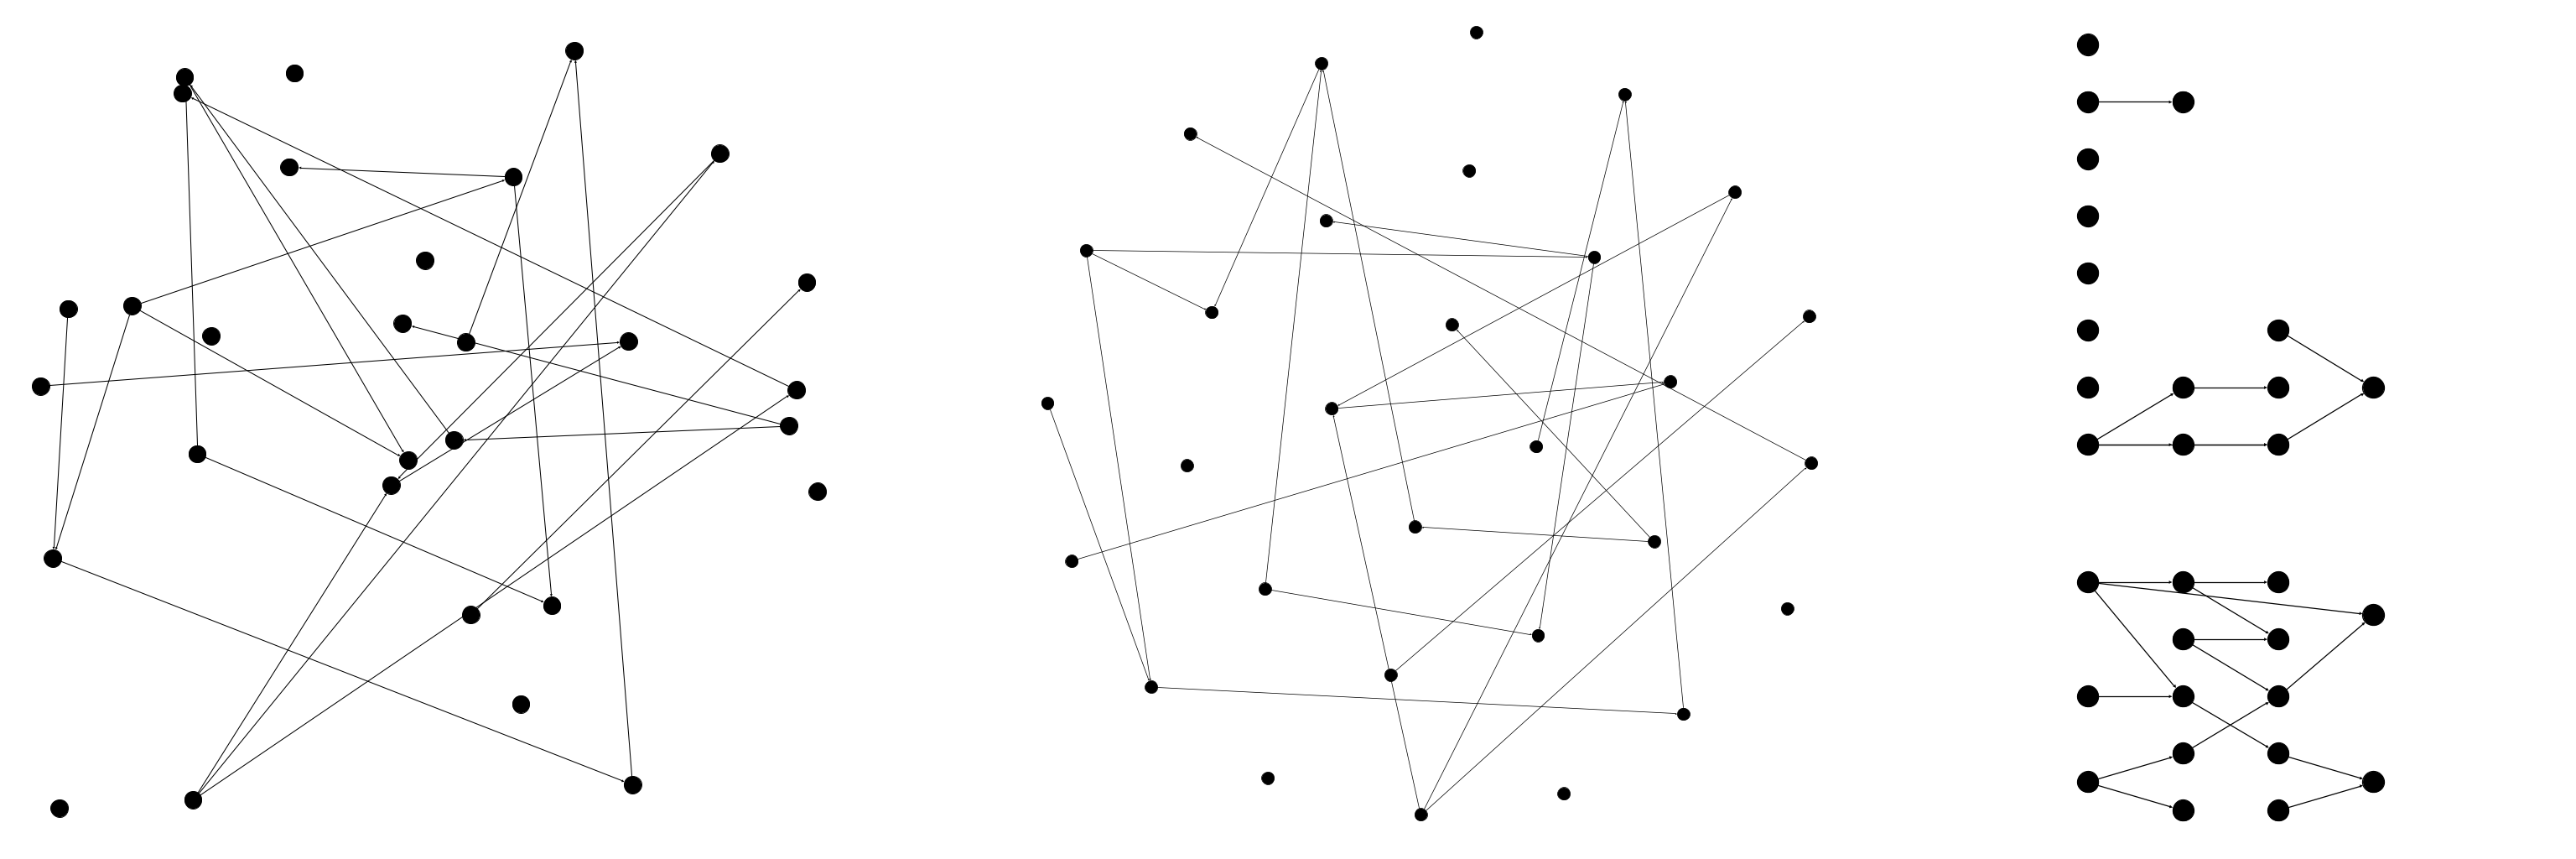 Abb. 1: Verschiedene Darstellungen desselben Graphen. Jede
                              Darstellung vermittelt visuell andere Informationen, die
                              darunterliegenden mathematischen Strukturen bleiben allerdings
                              identisch. [Dörpinghaus 2022]